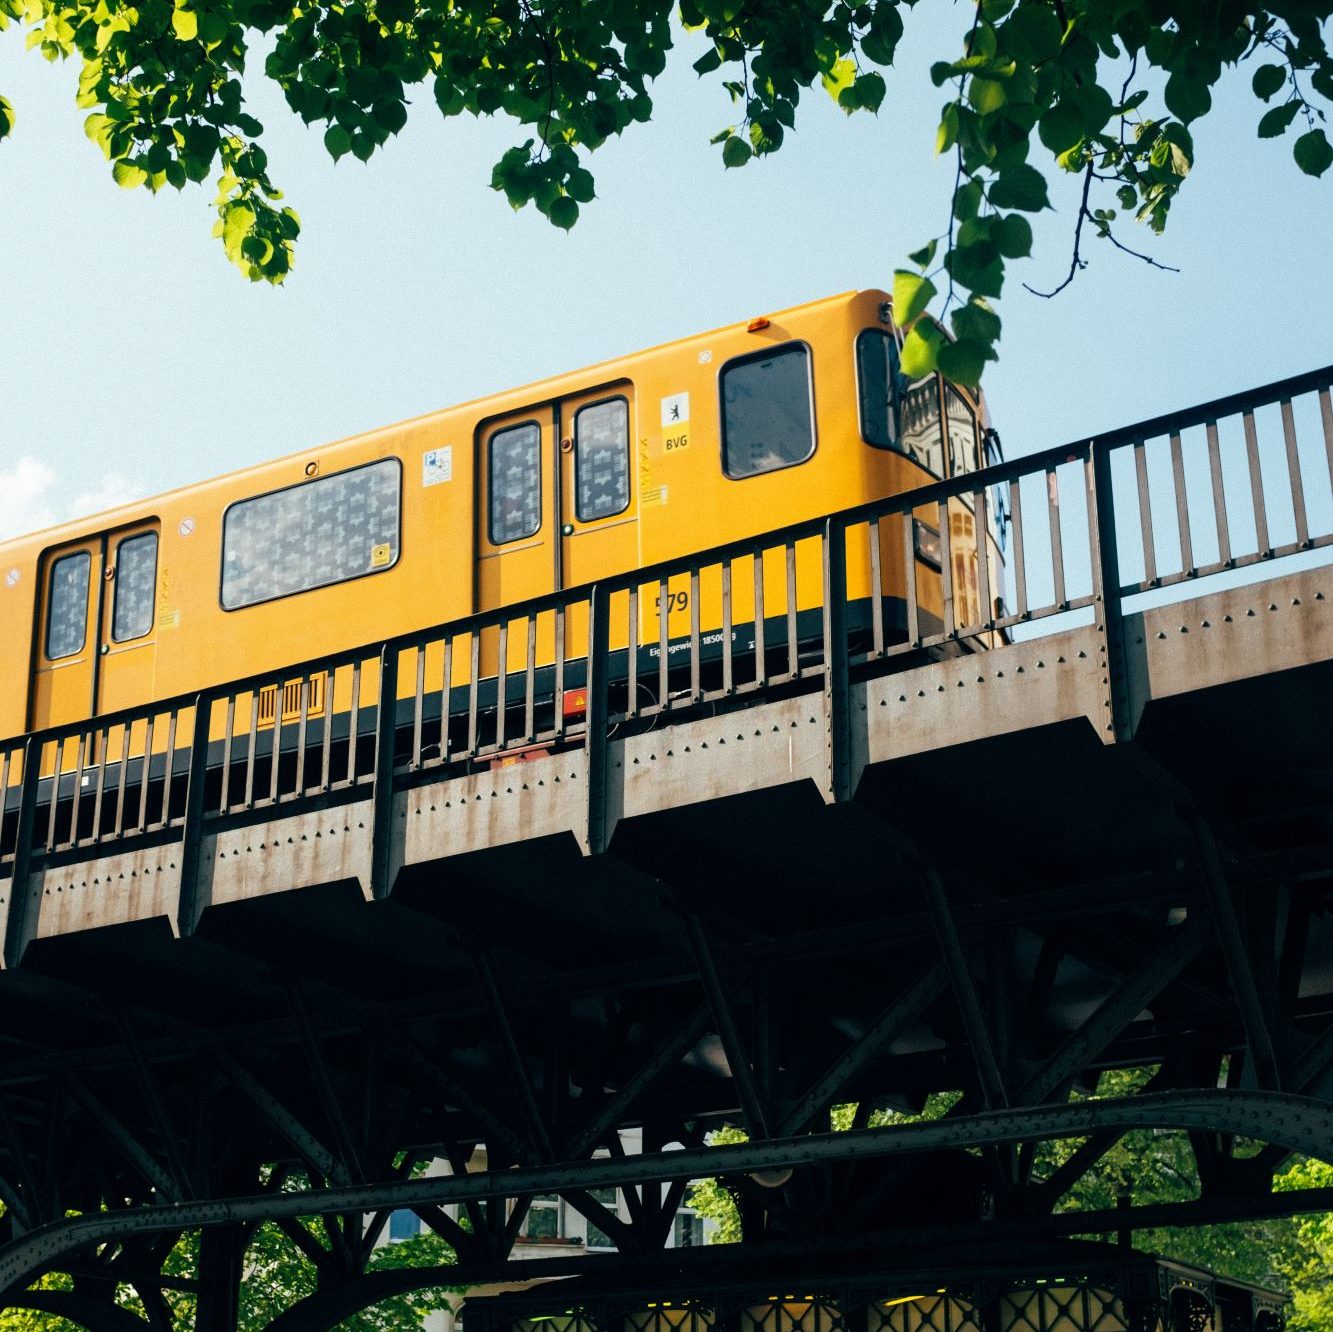 Gelbe Straßenbahn in Berlin fährt auf einer Brücke. Oben im Bild hängen Äste